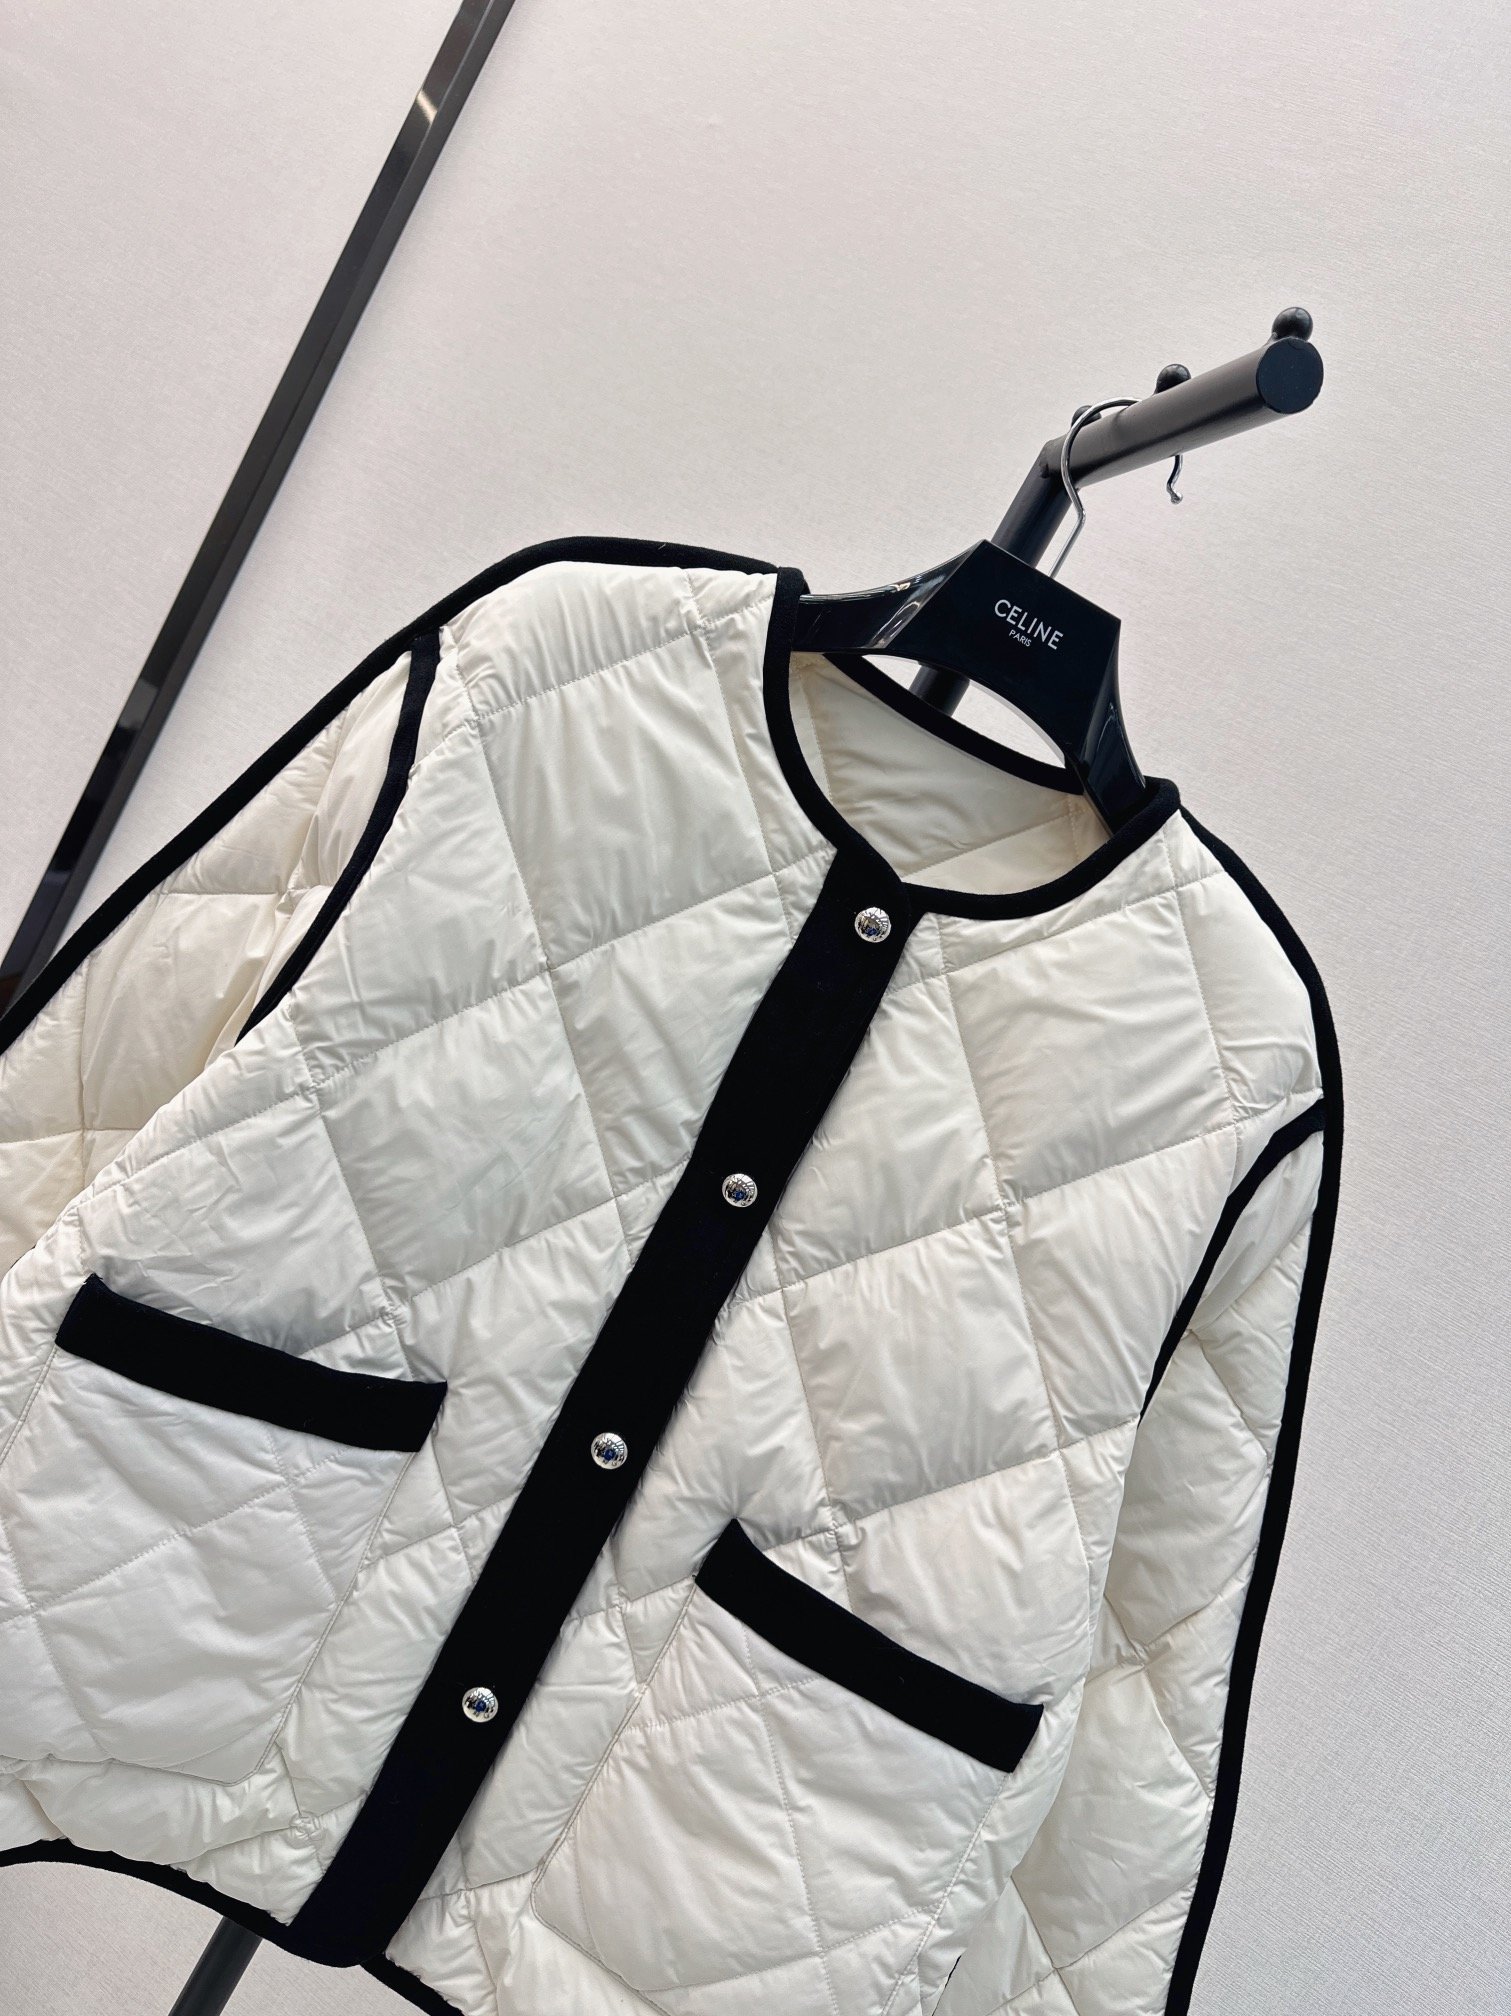 时髦小众设计23Ss秋冬最新款经典黑白装饰菱格纹羽绒外套温暖氛围感怕冷的宝贝可以入手了经典的菱格纹做法上